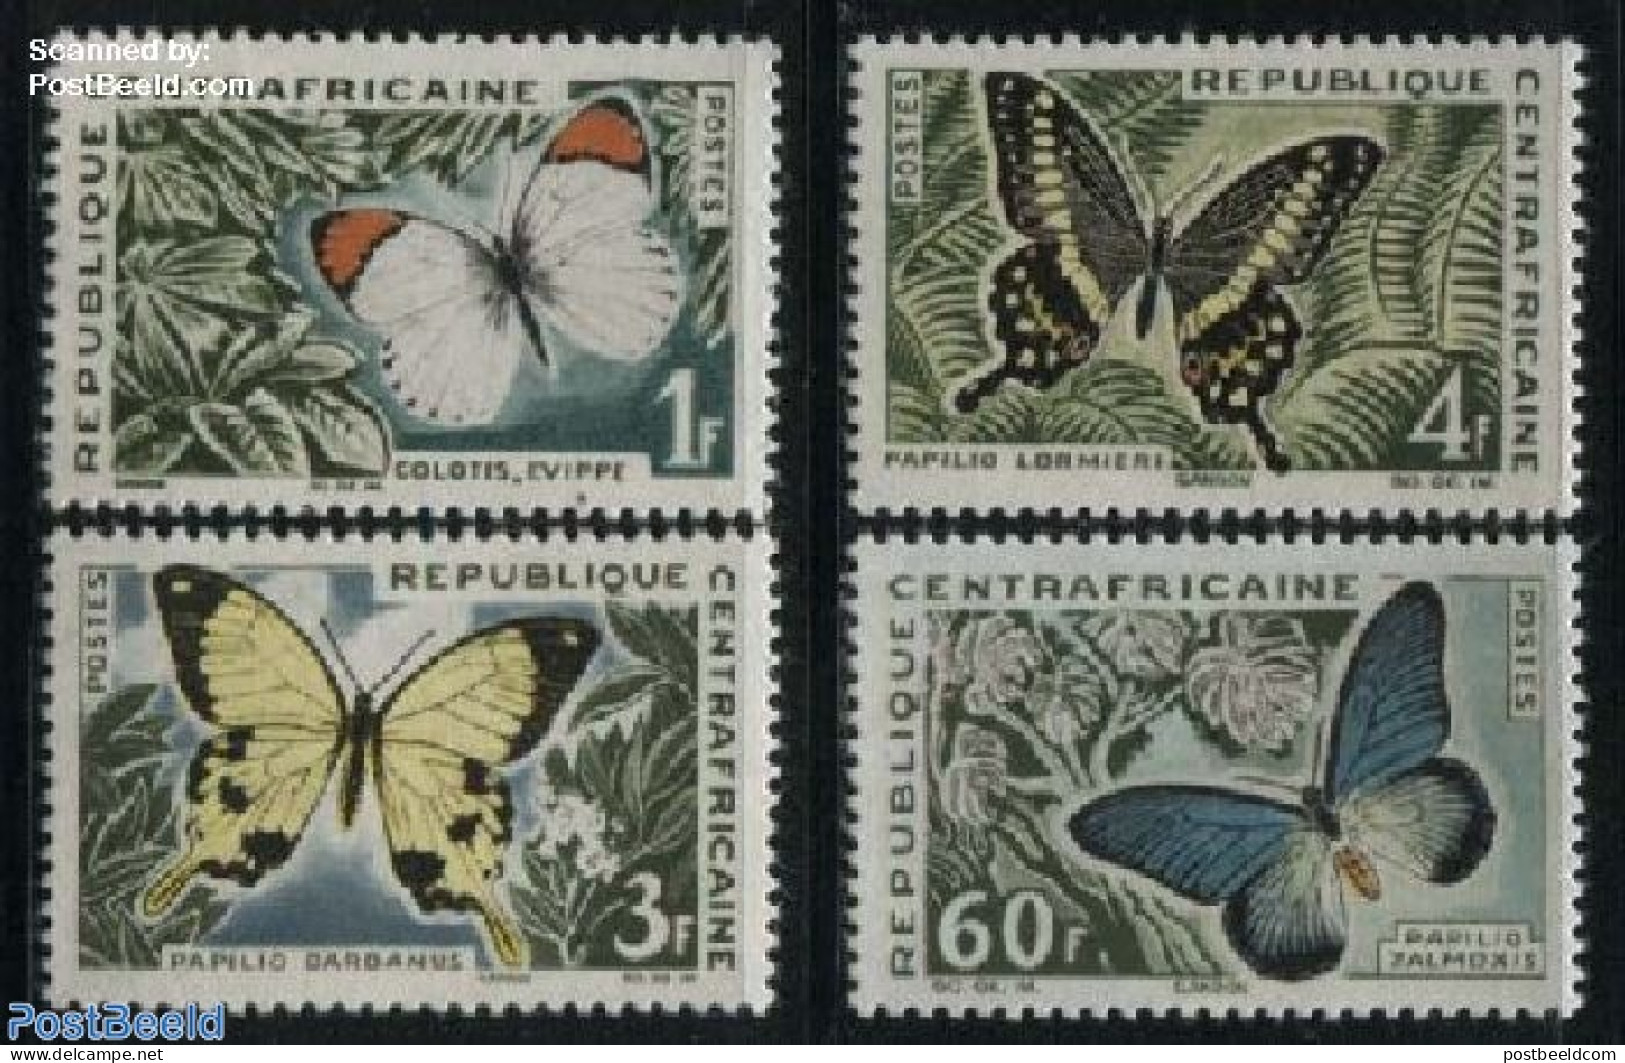 Central Africa 1963 Butterflies 4v, Mint NH, Nature - Butterflies - Repubblica Centroafricana